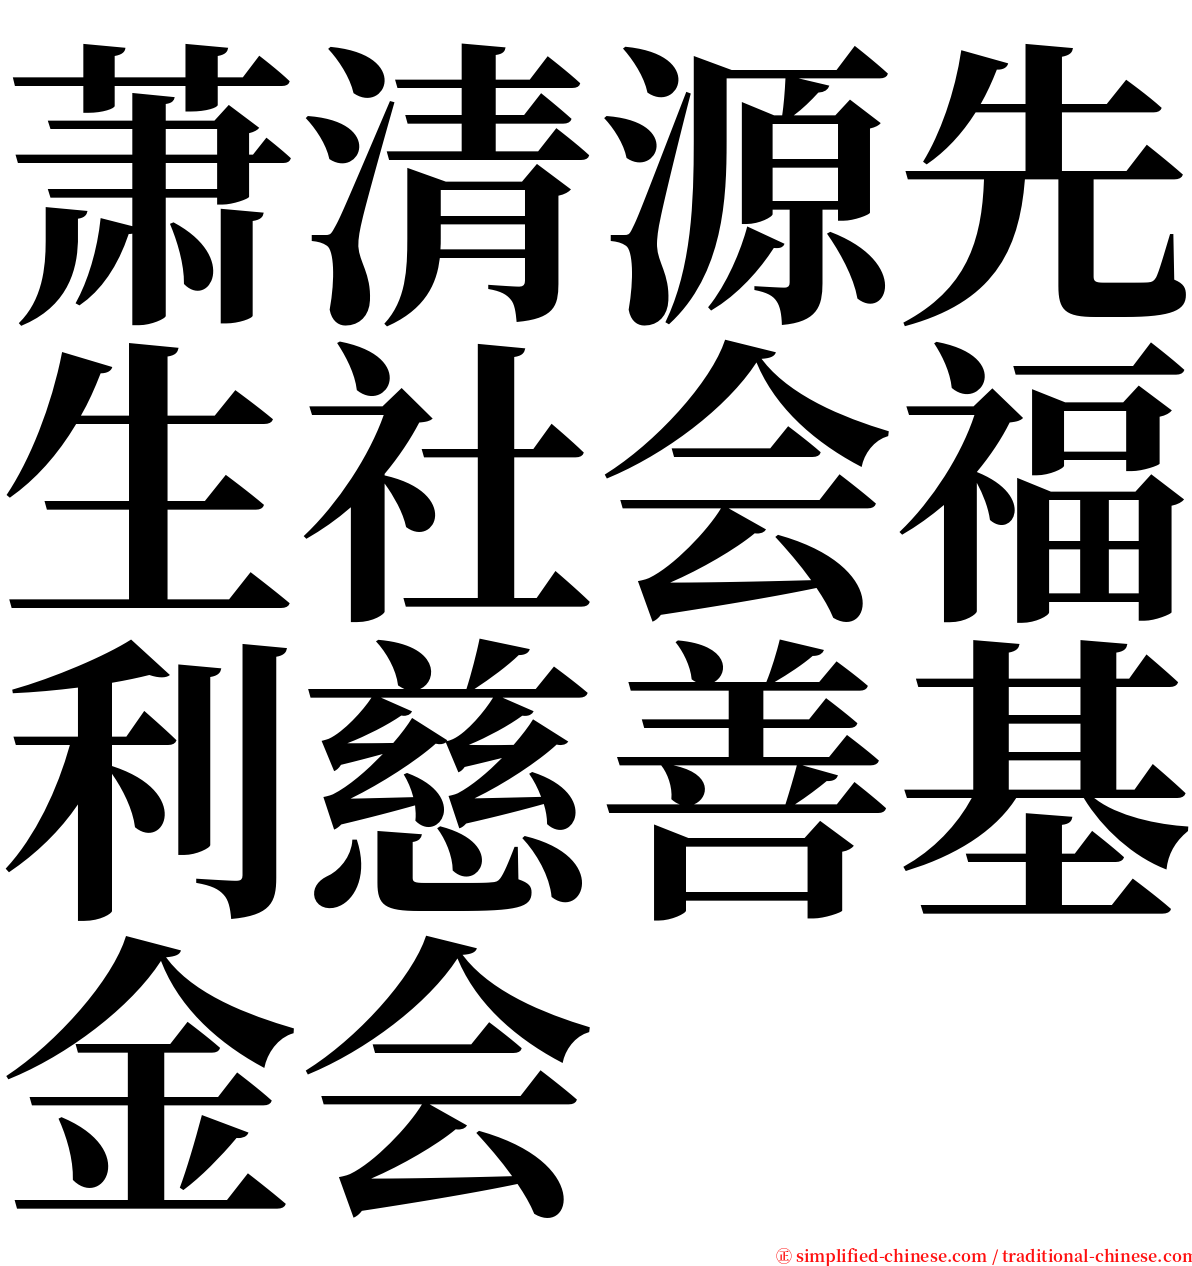 萧清源先生社会福利慈善基金会 serif font